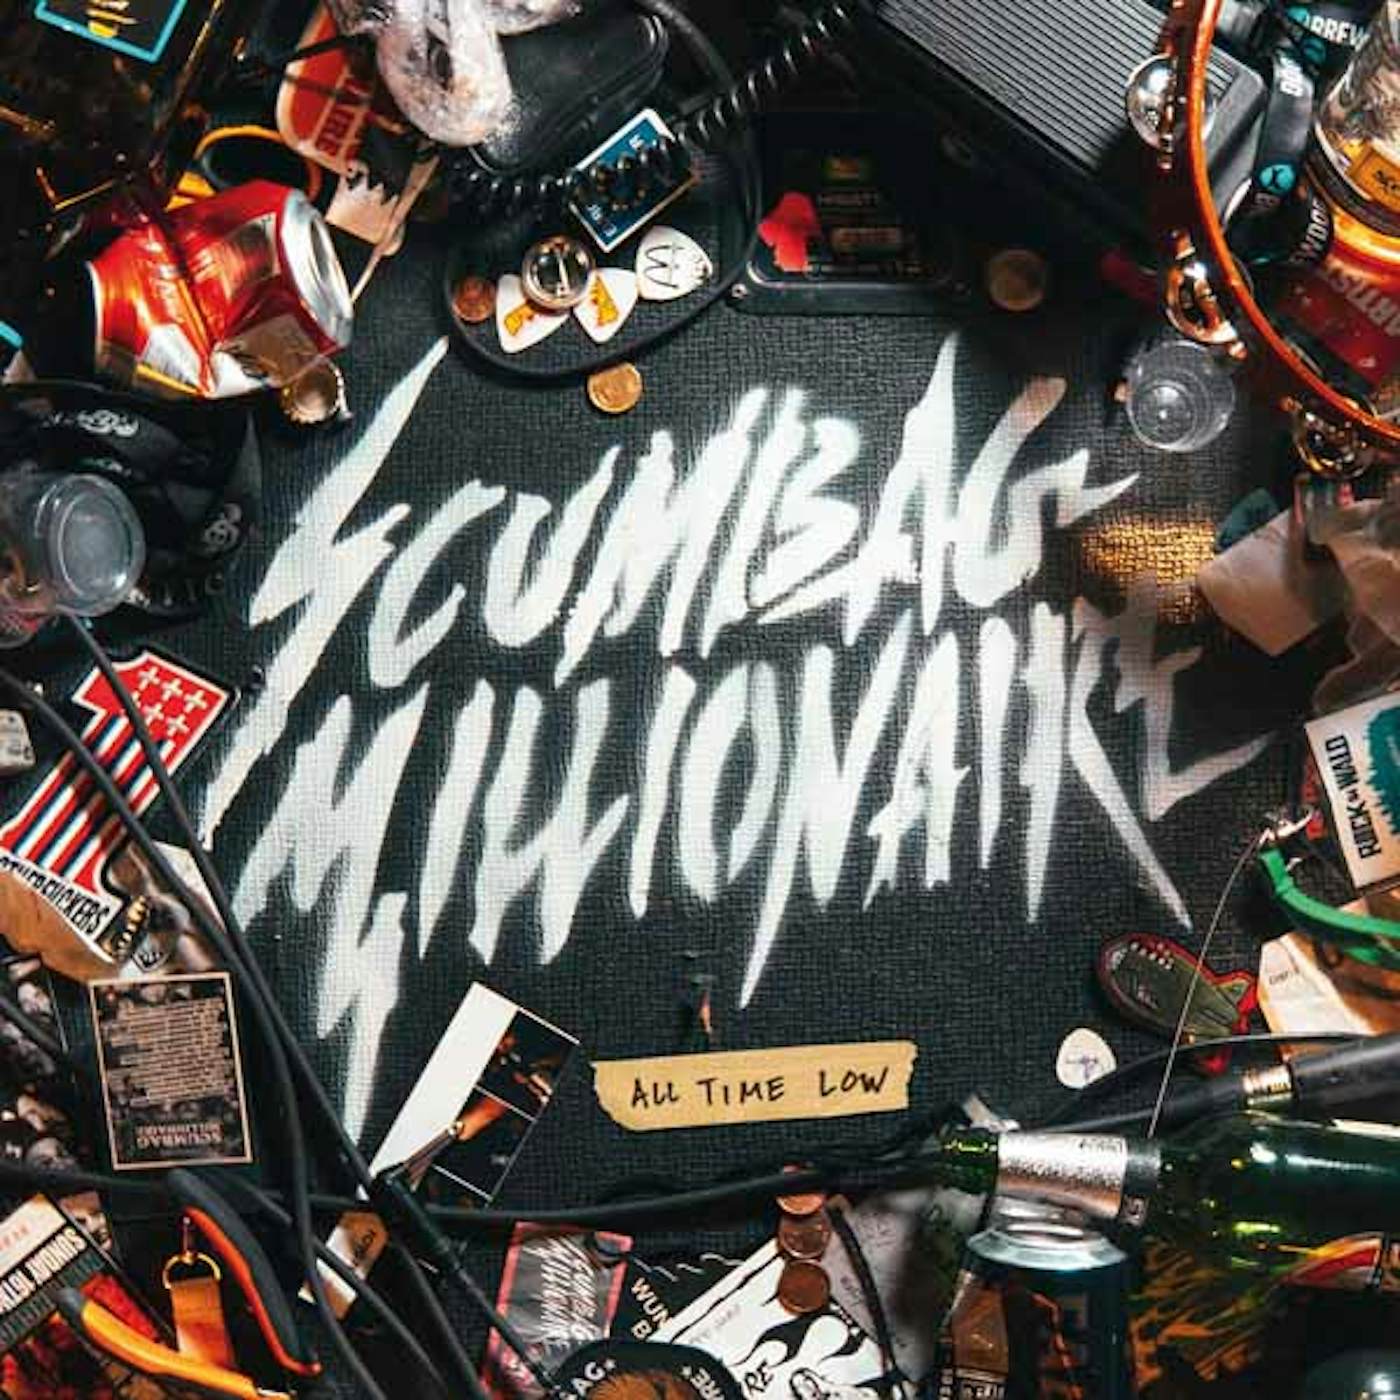 Scumbag Millionaire LP - All Time Low (Vinyl)